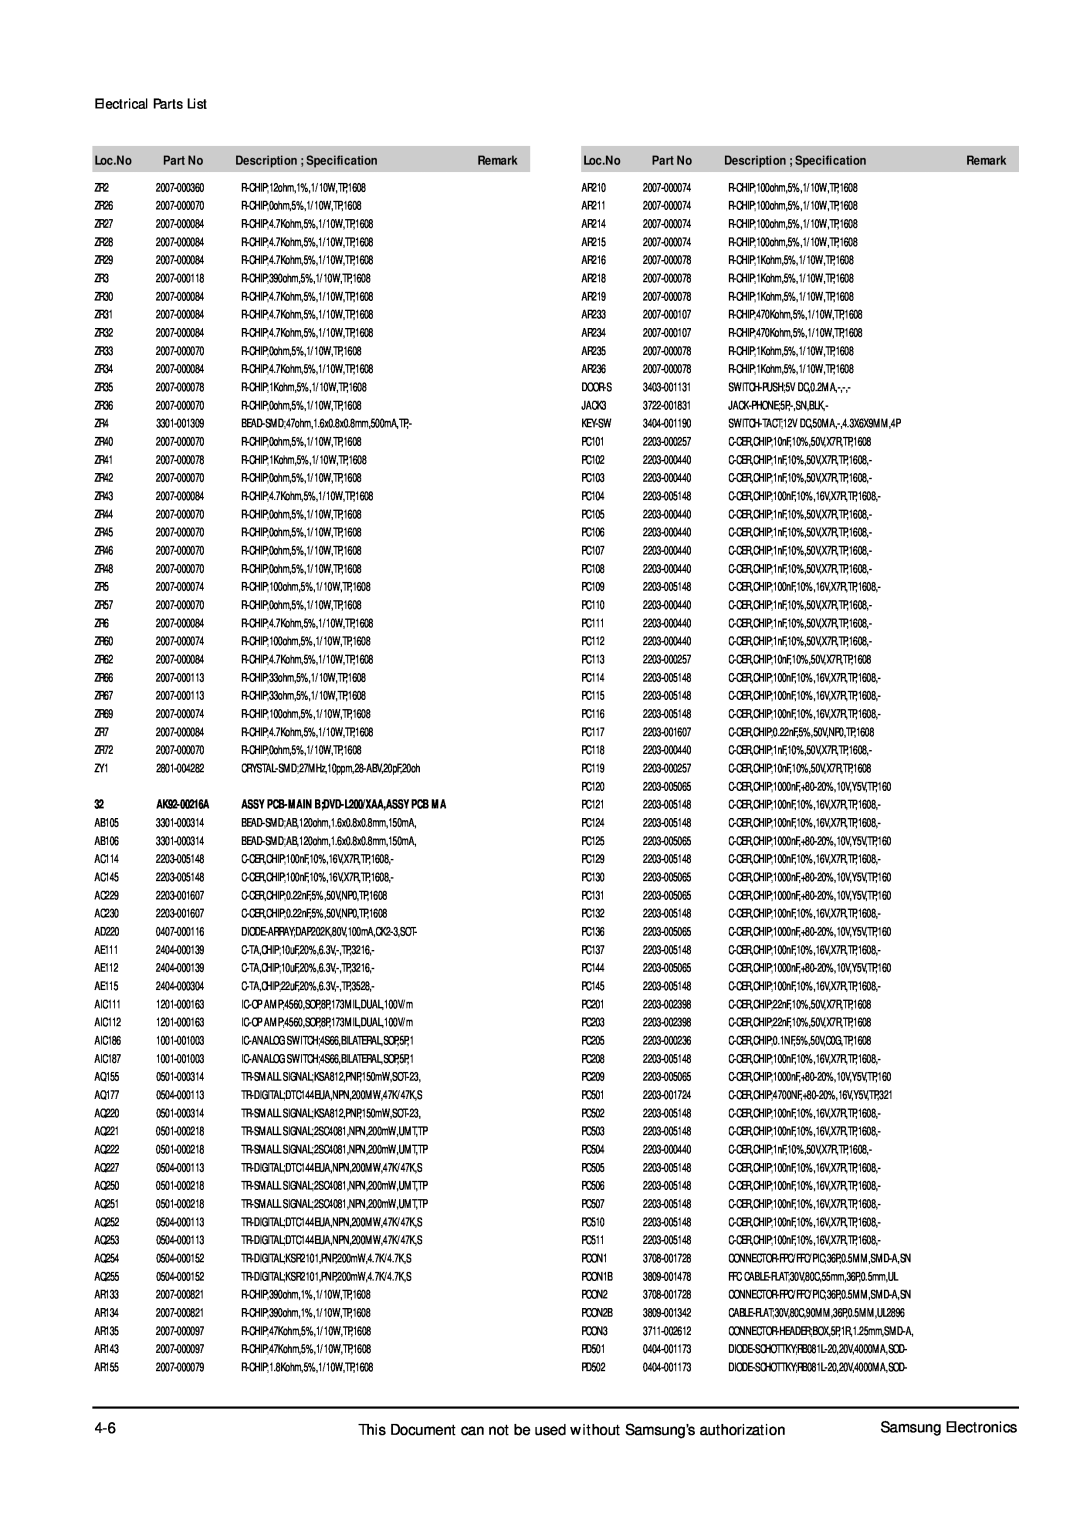 Samsung DVD-L200W service manual Electrical Parts List, Loc.No, Description Specification, AK92-00216A 